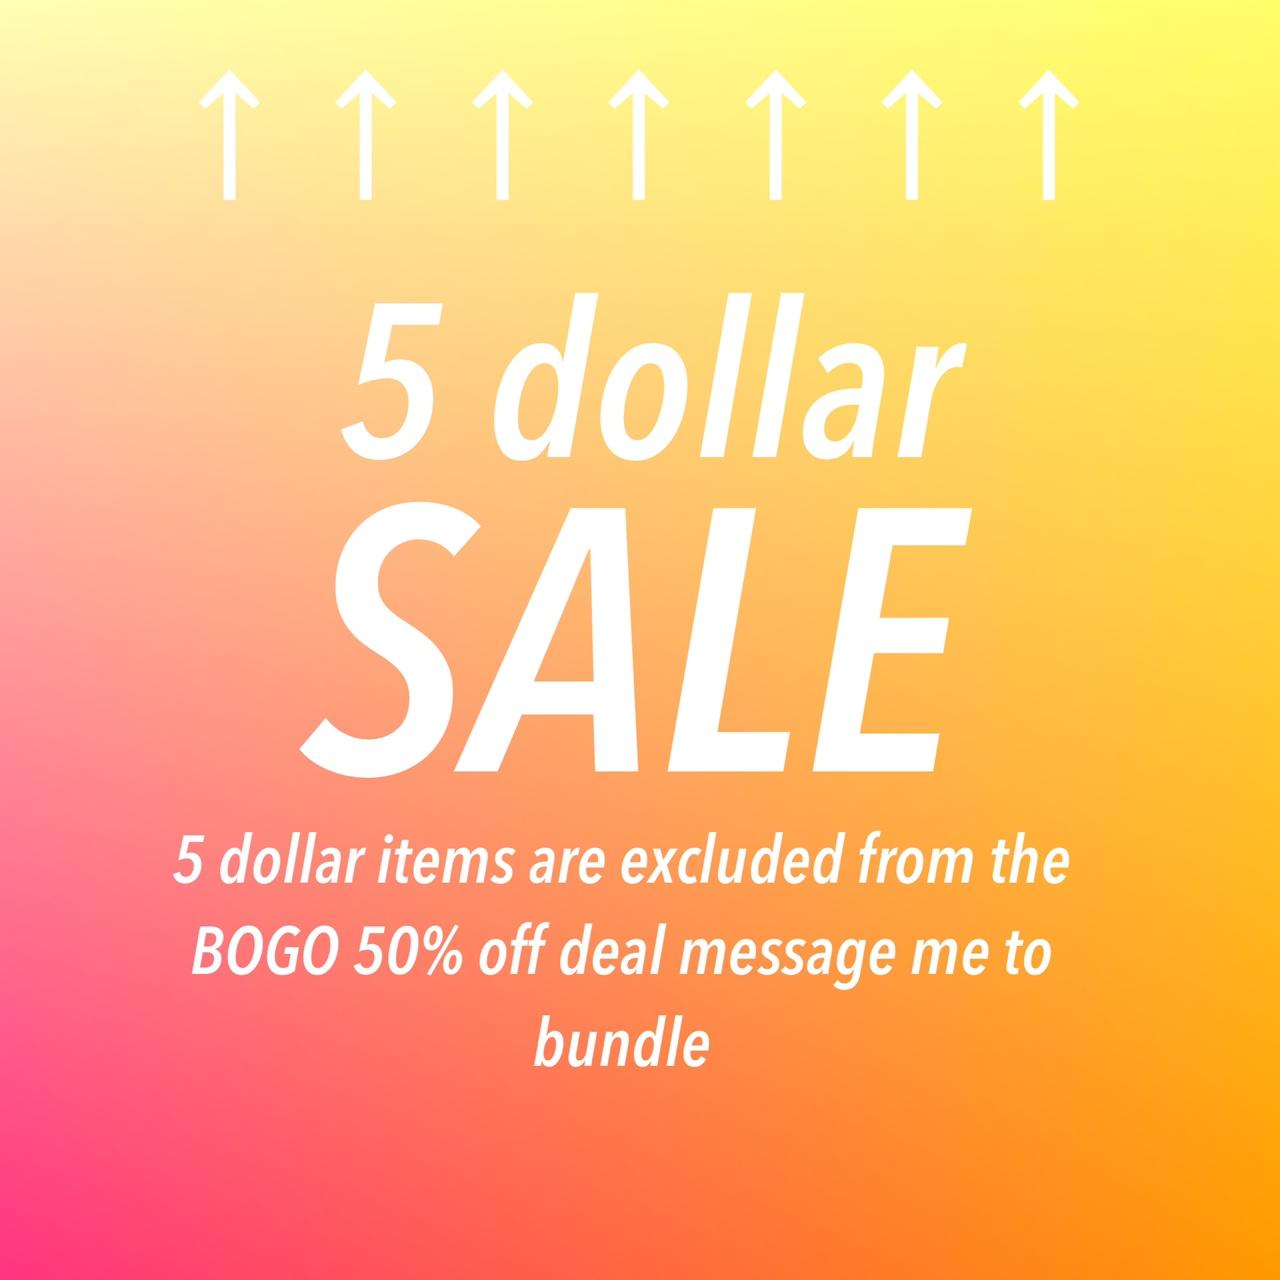 Big 5 dollar sale!!!! 5 dollar items will be